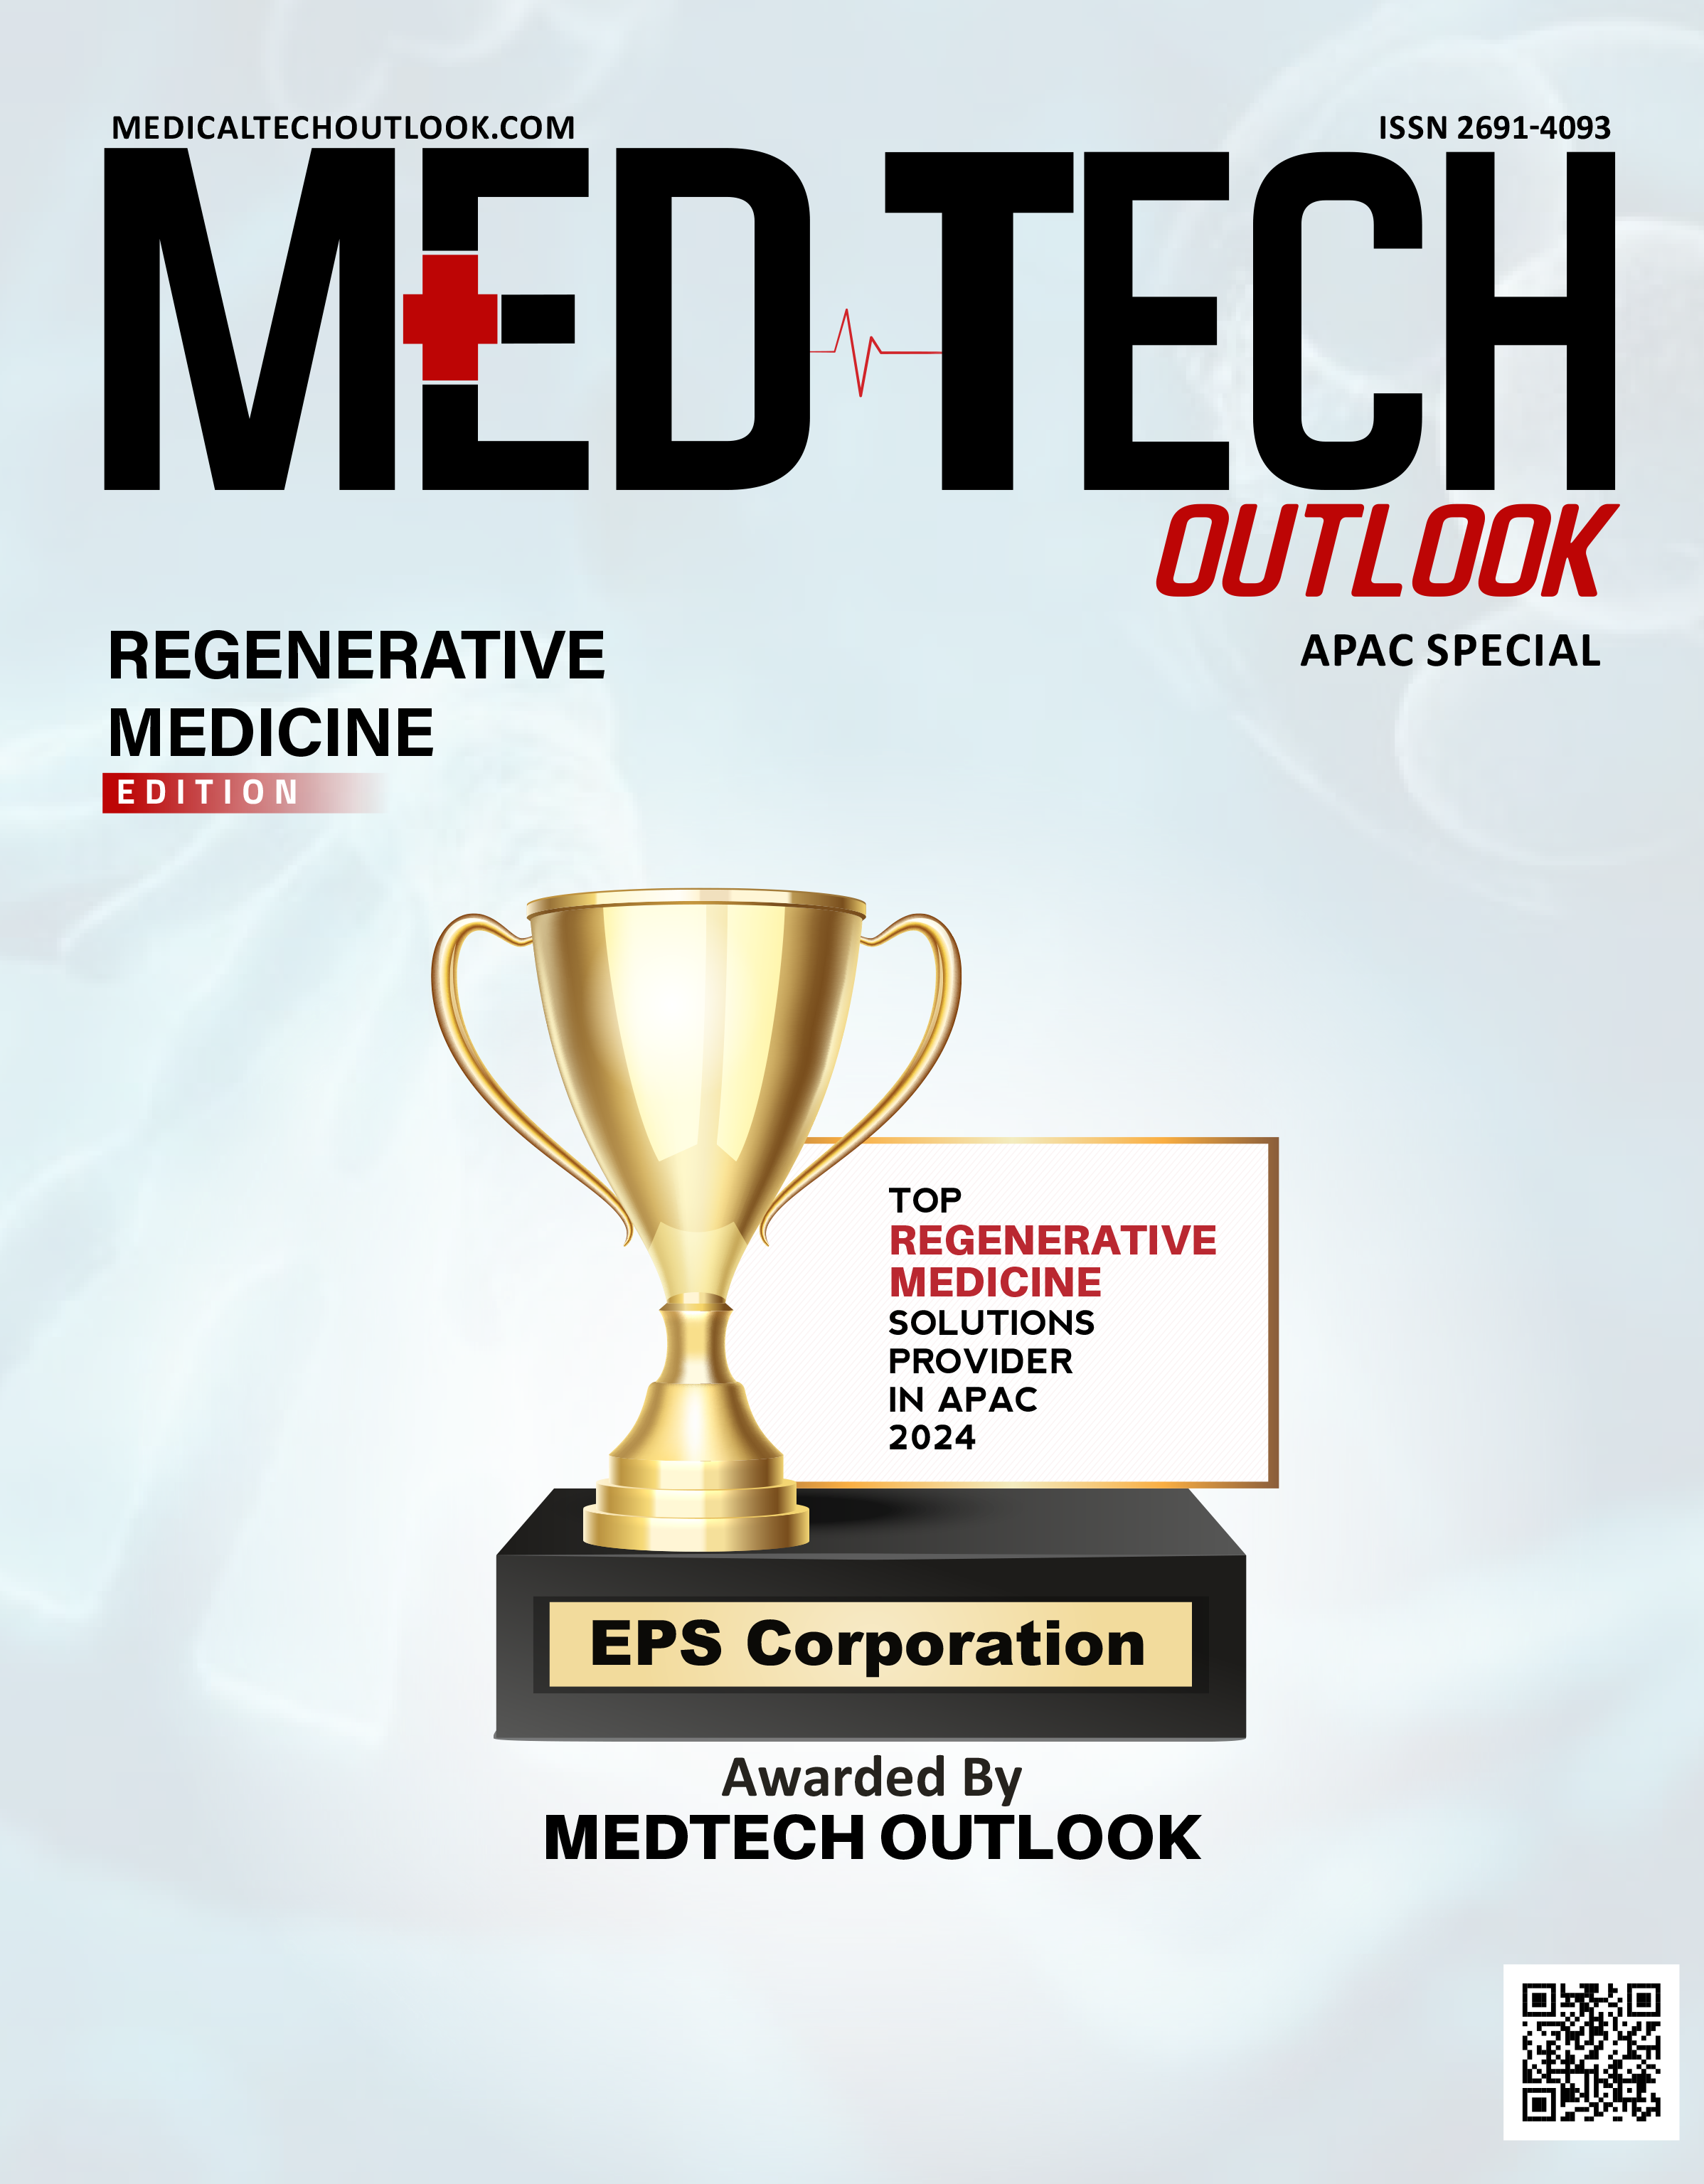 Medtech Outlook